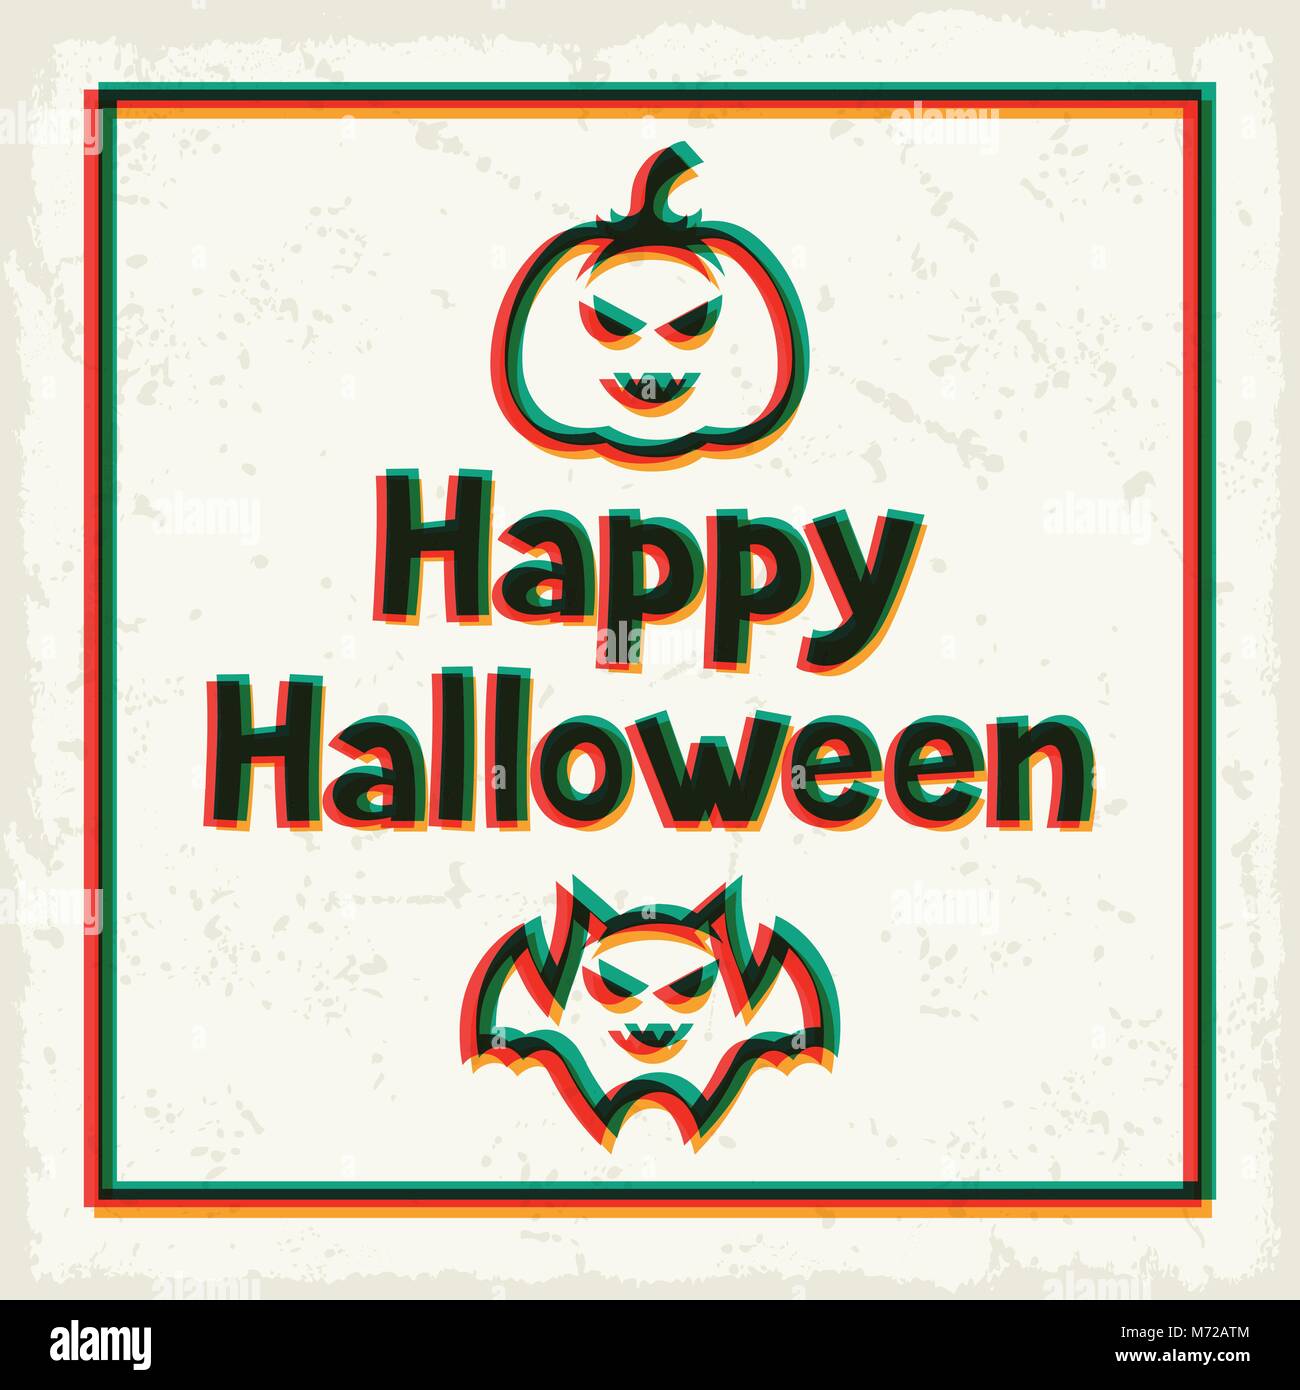 Happy Halloween carte de souhaits avec superposition d'effet Illustration de Vecteur